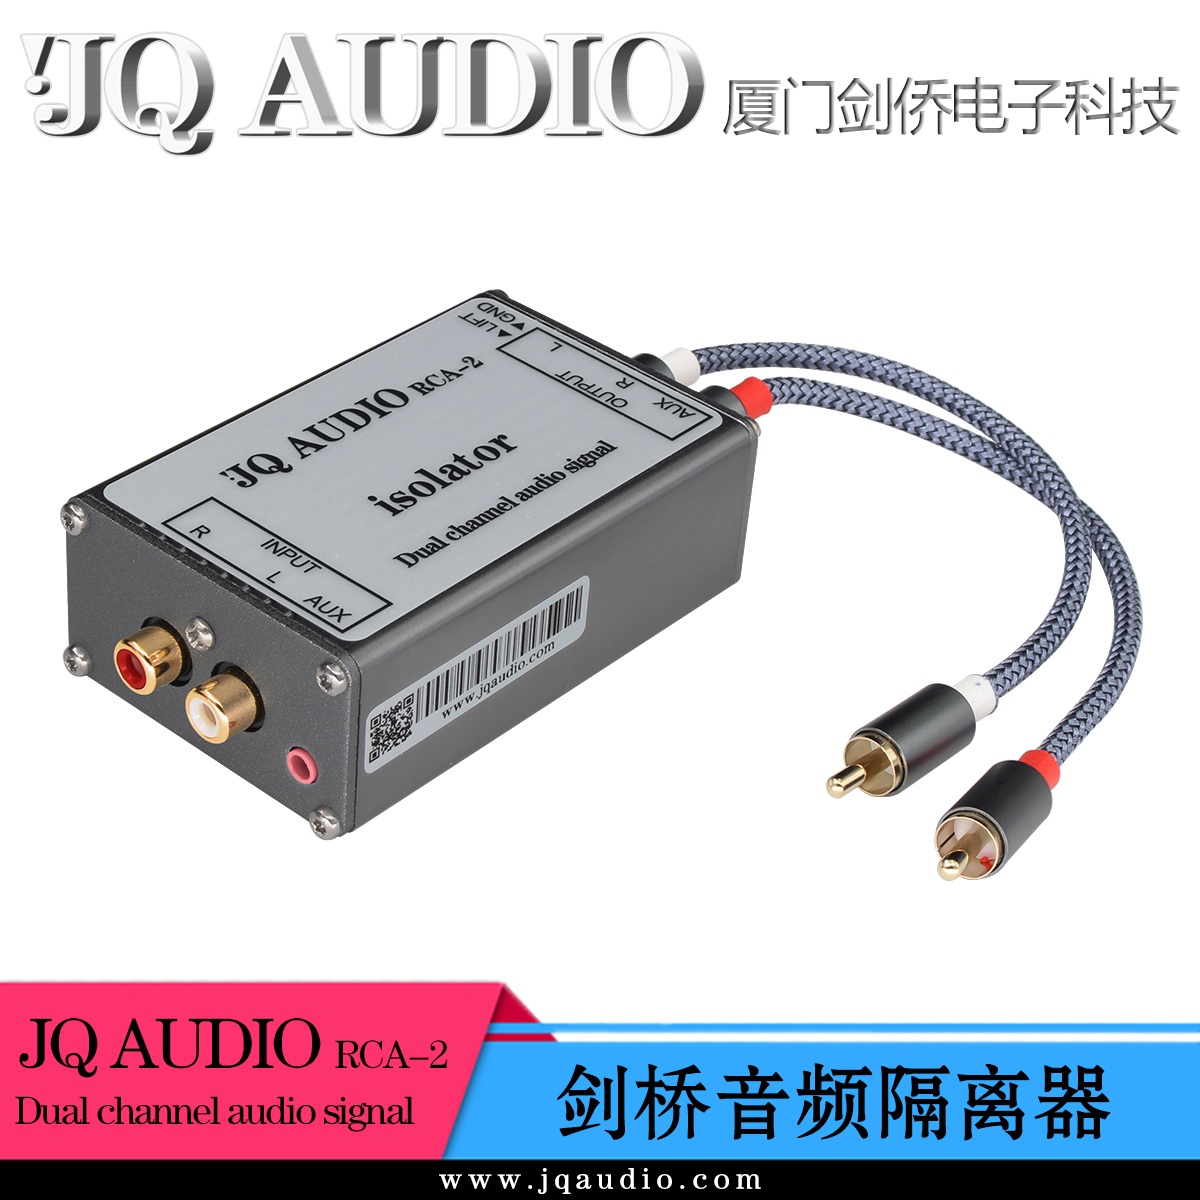 JQAUDIO RCA-2音频信号隔离器 RCA入RCA出 音响电流声滤波器 3C数码配件 隔离器/耦合器 原图主图